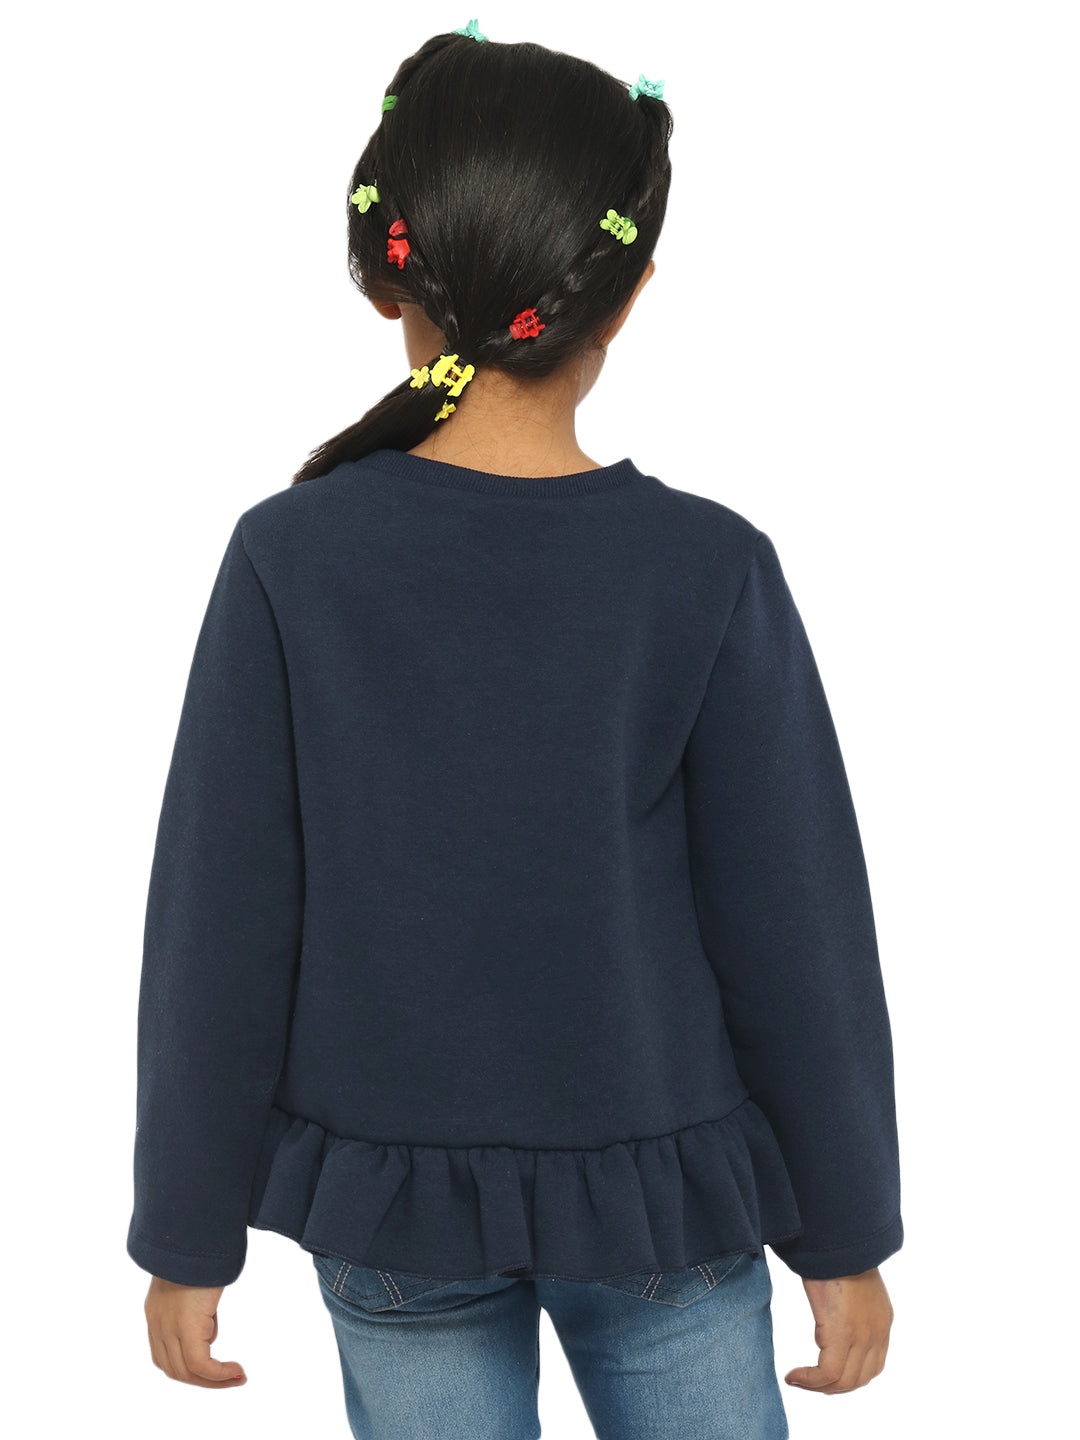 Nautinati Girls Navy Blue Printed Sweatshirt